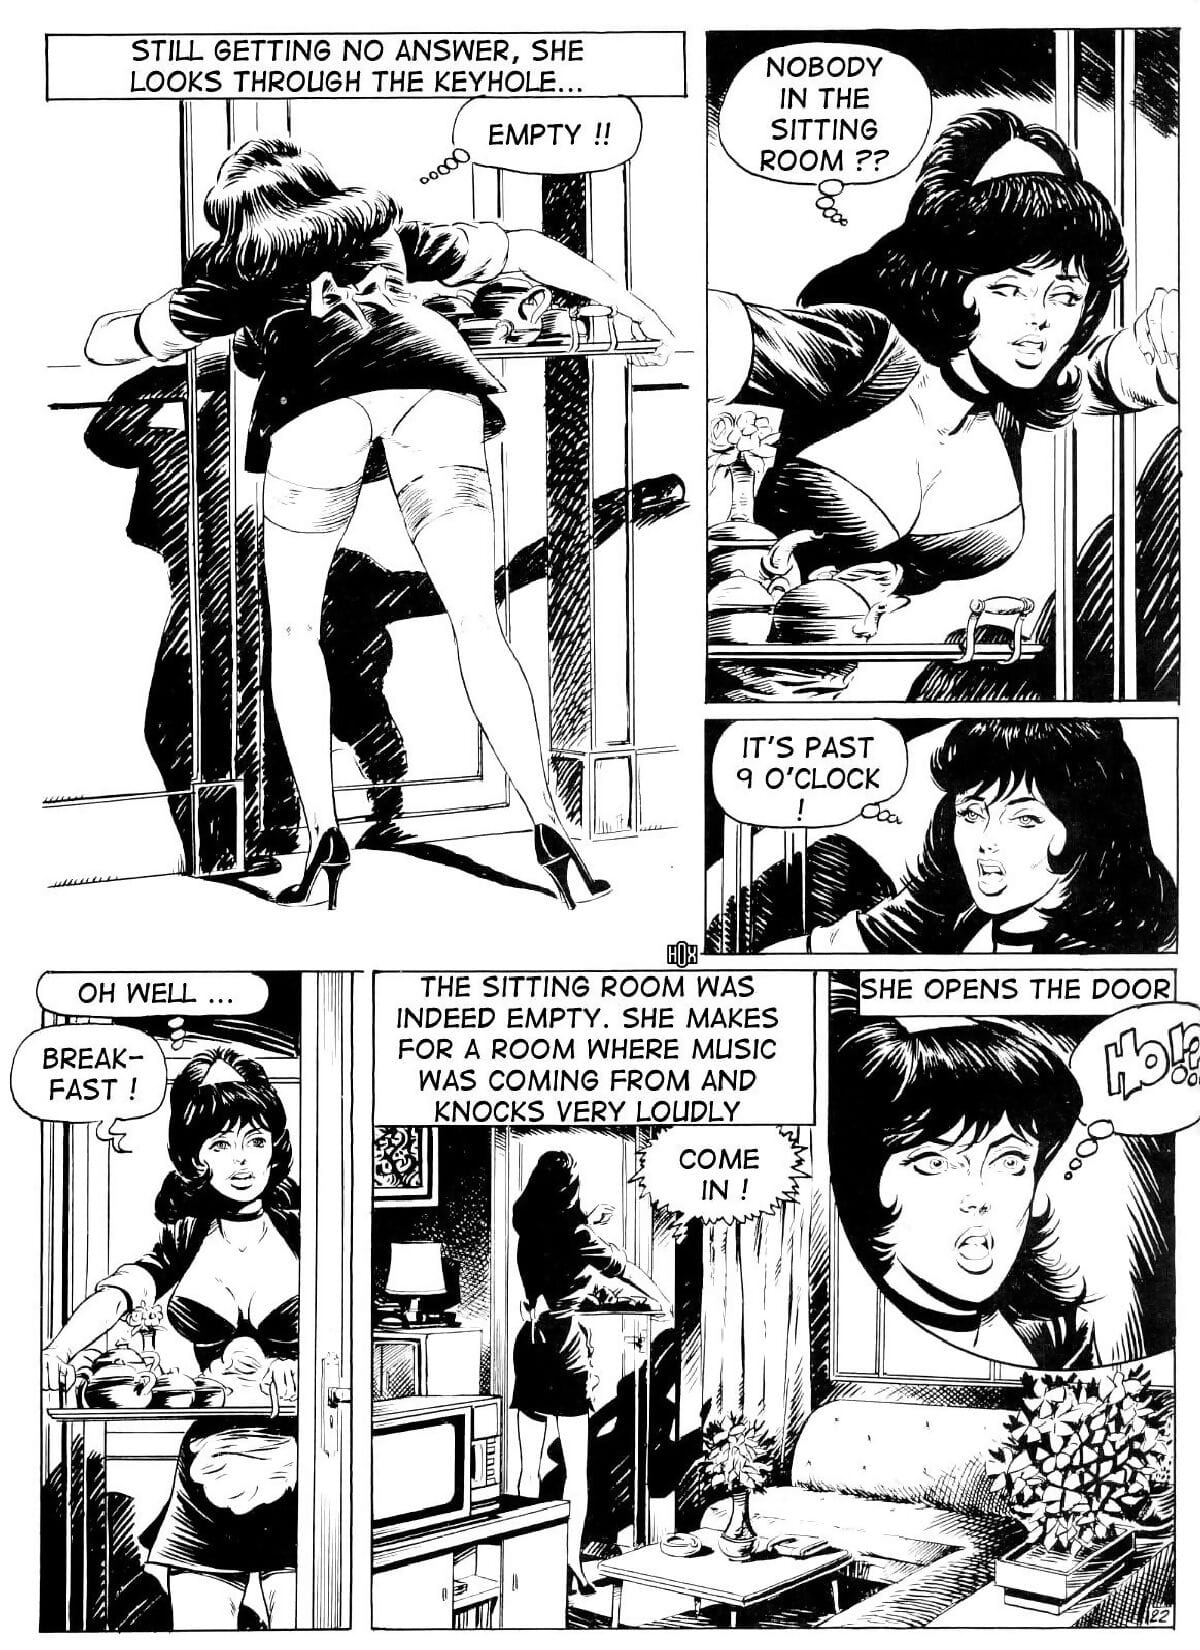 Brigitte De Luxe Maid #2 page 1